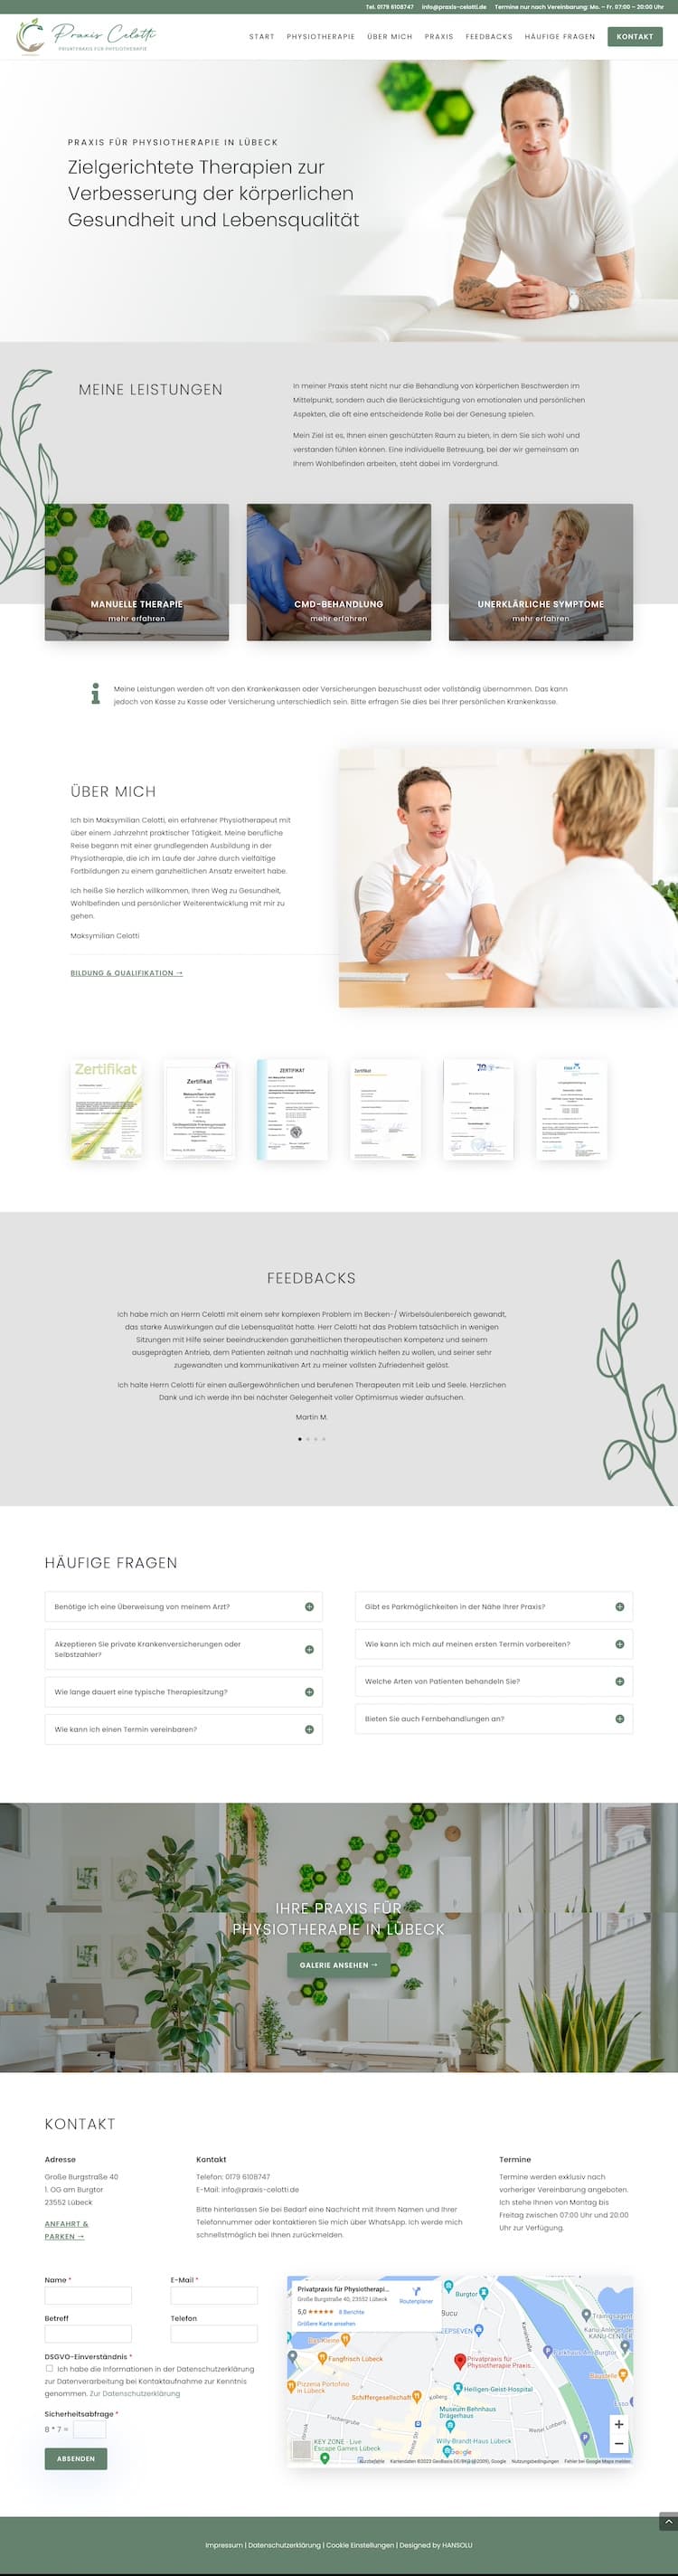 Webdesign für Physiotherapie -Bildschirmfoto von der Startseite der Praxis Celotti